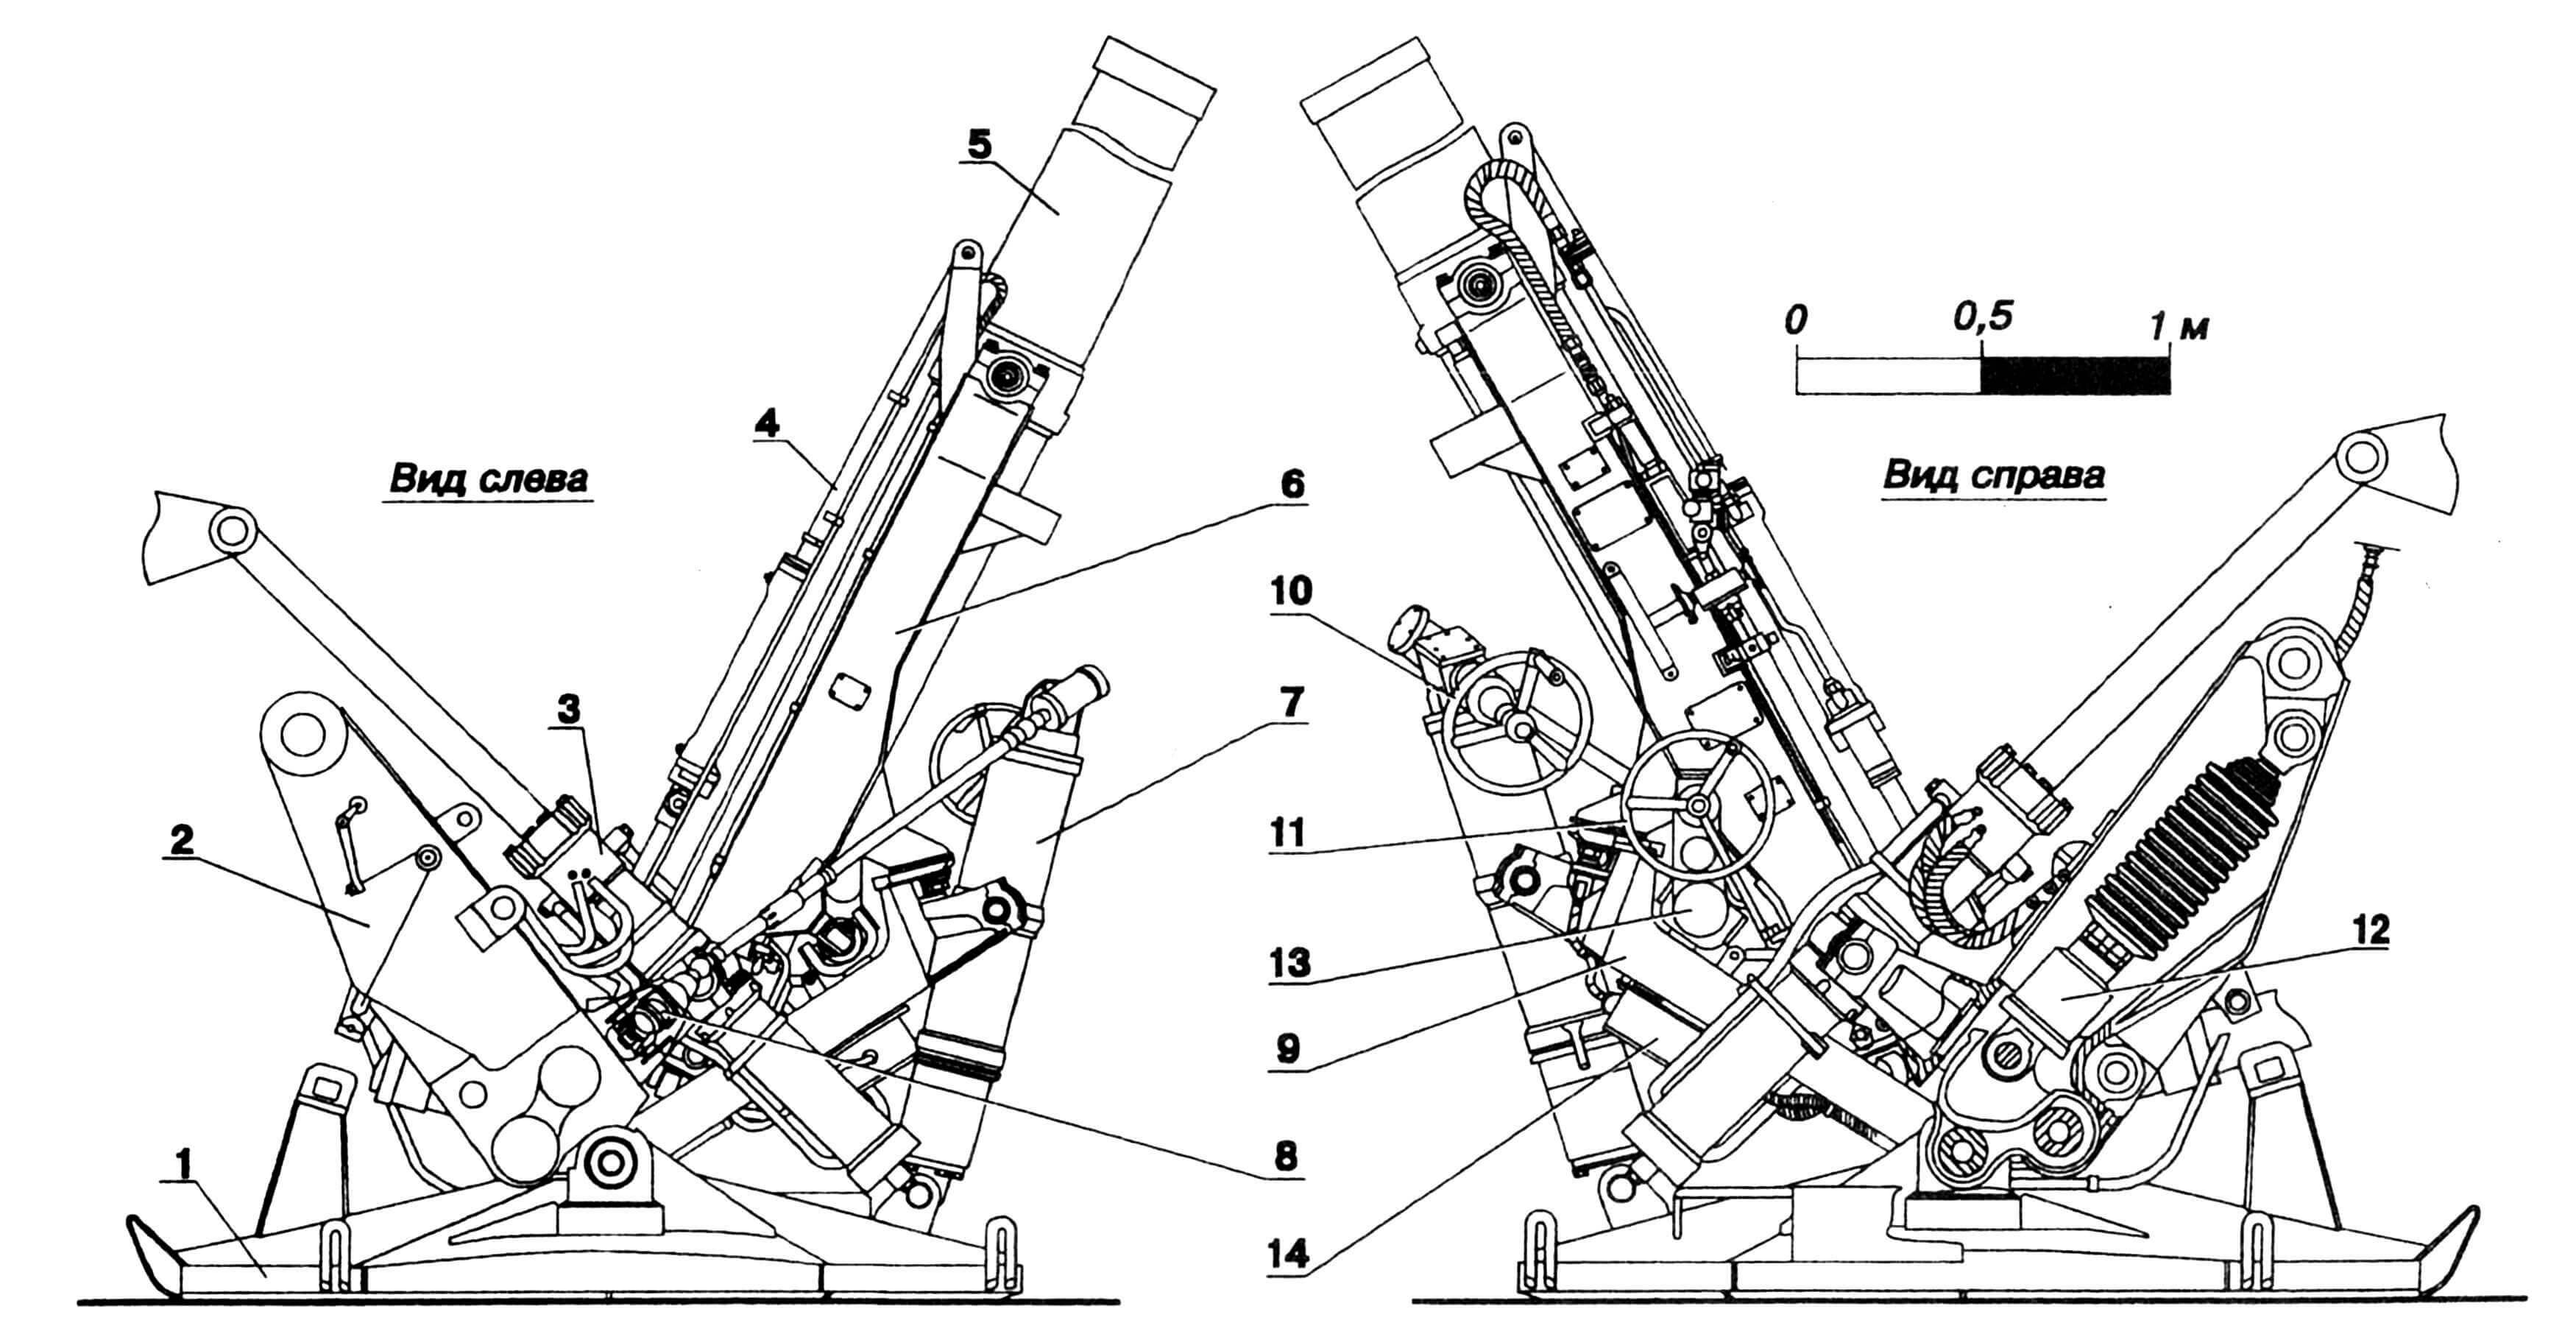 Общий вид боевой части (2Б8): 1 — плита опорная, 2 — рама плиты, 3 — цилиндр подъема миномета на машину, 4 — гидросистема, 5 — ствол, 6 — рама ствола, 7 — механизм подъемно-уравновешивающий, 8 — гидромотор, 9 — станок, 10 — штурвал вертикального наведения, 11 — штурвал горизонтального наведения, 12 — гидробуфер, 13 — механизм поворота, 14 — электрокоробка.